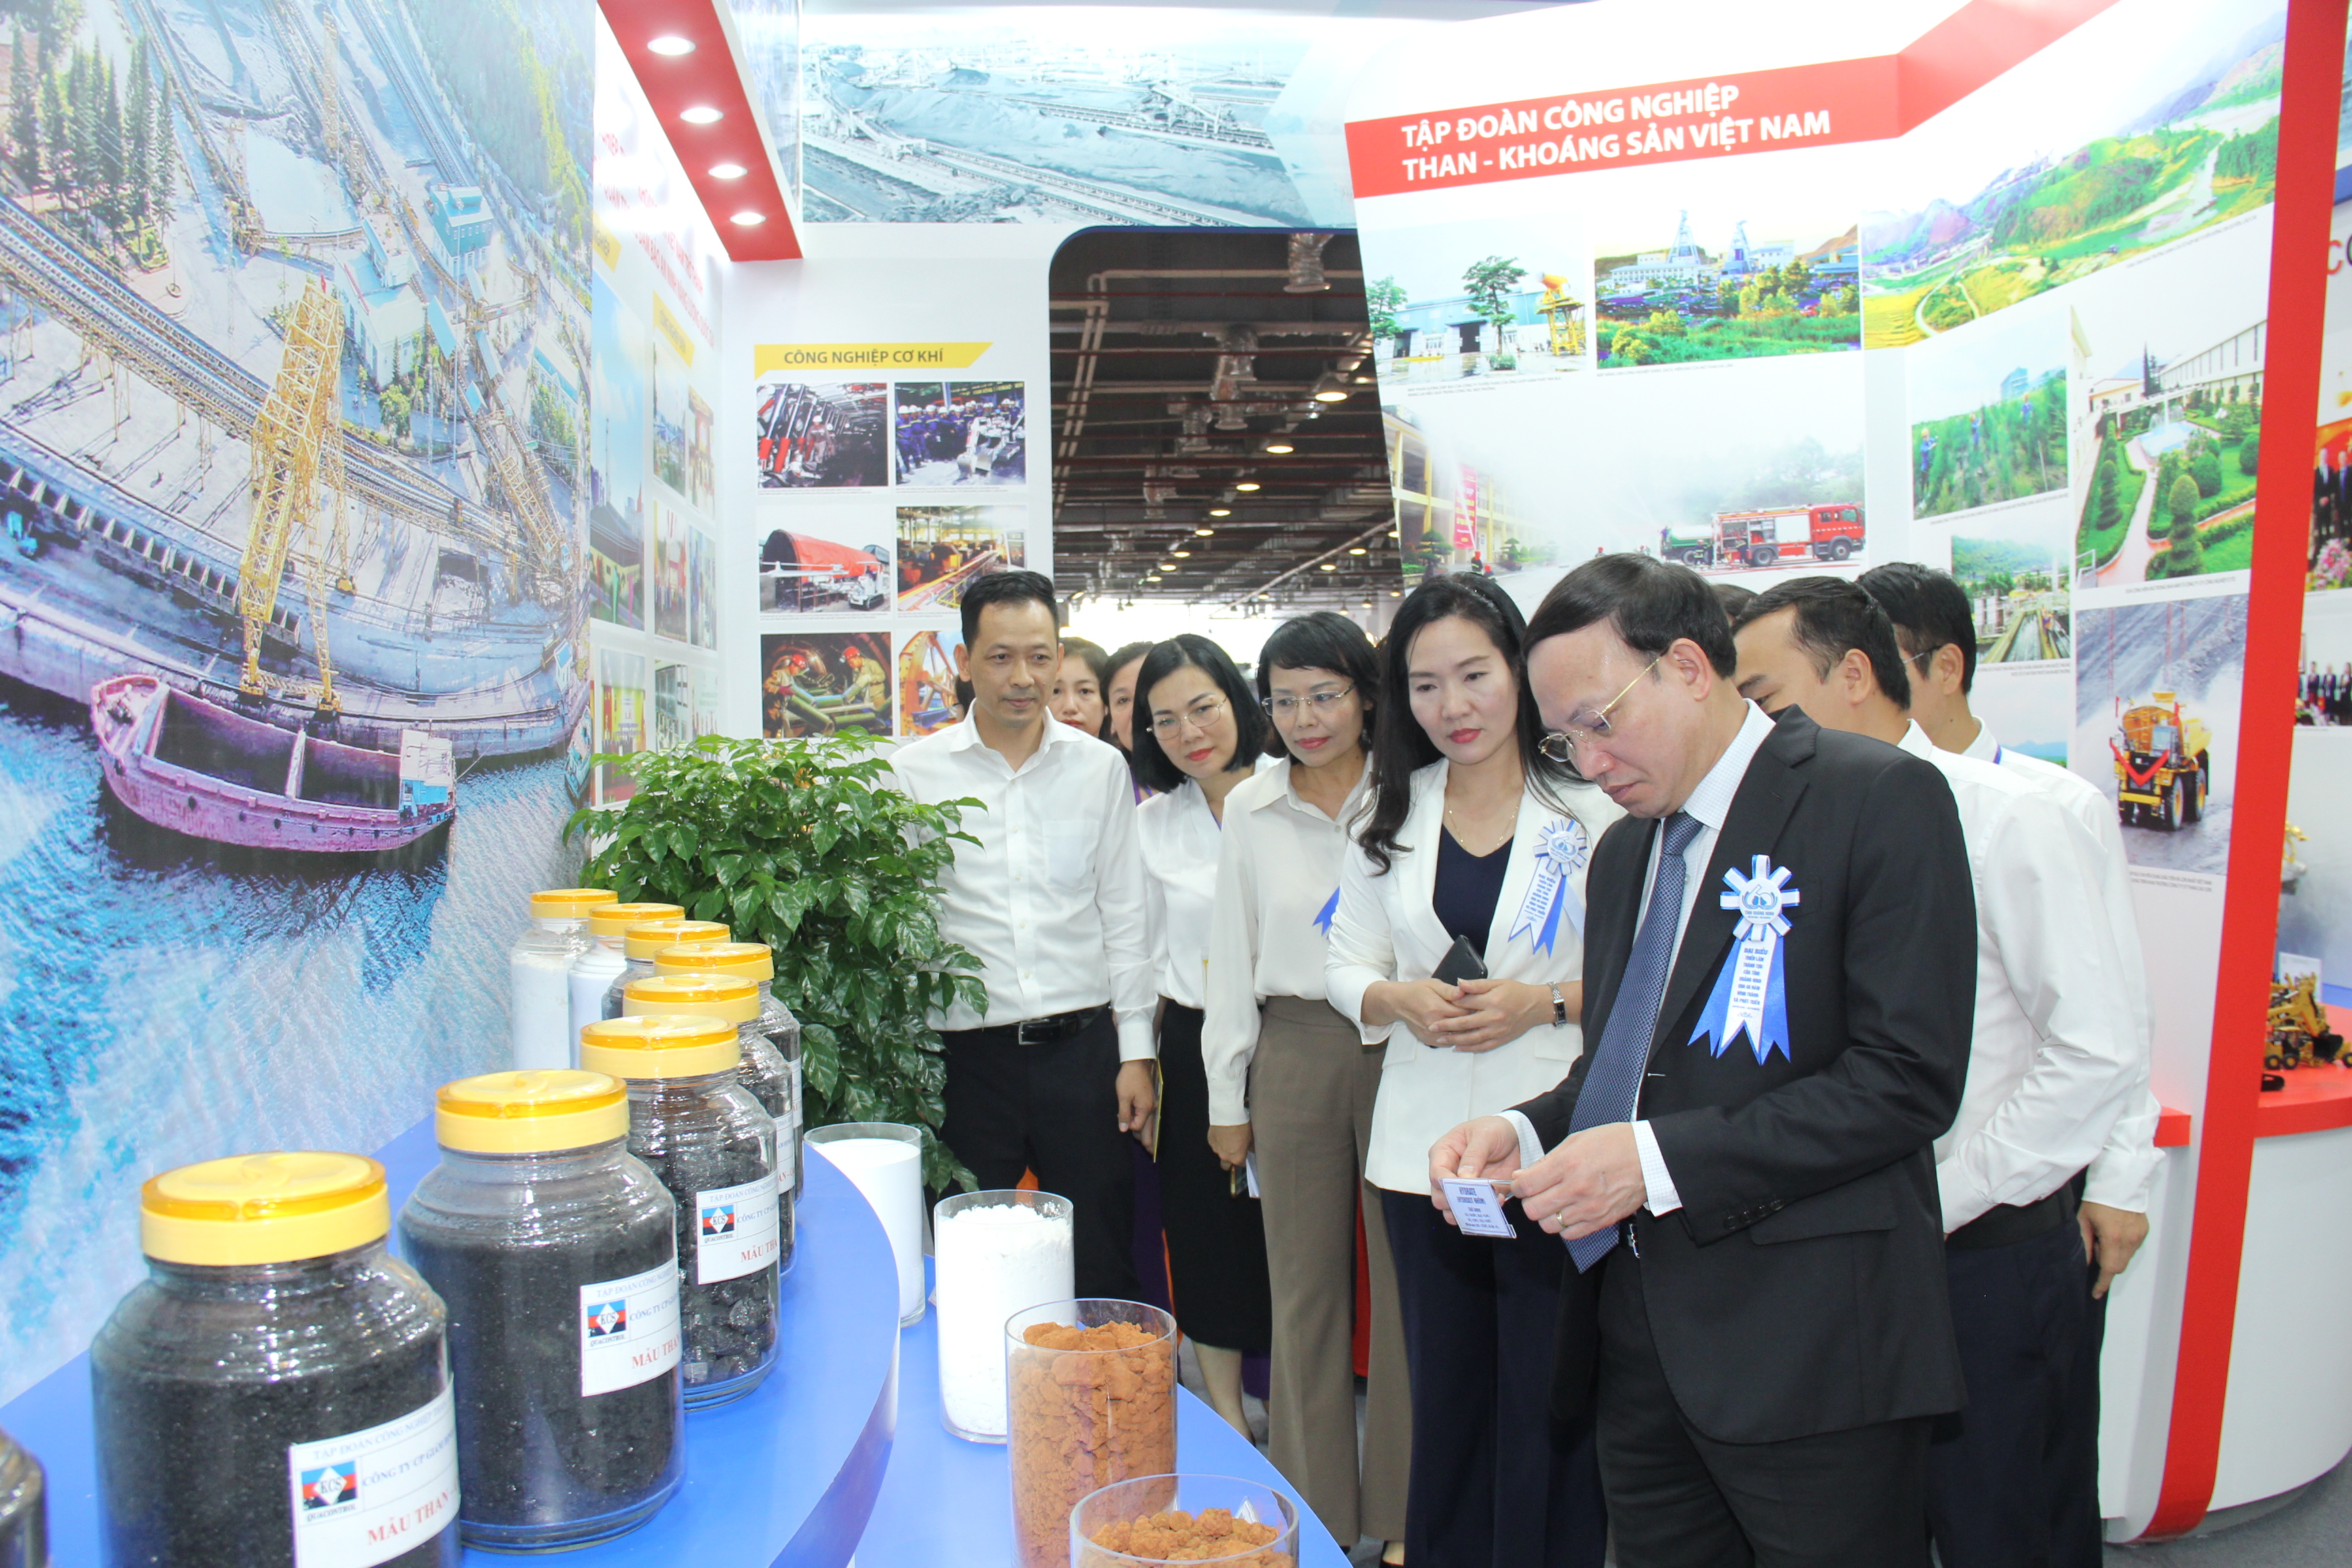 TKV tham gia Triển lãm thành tựu tỉnh Quảng Ninh qua 60 năm hình thành và phát triển - Ảnh 6